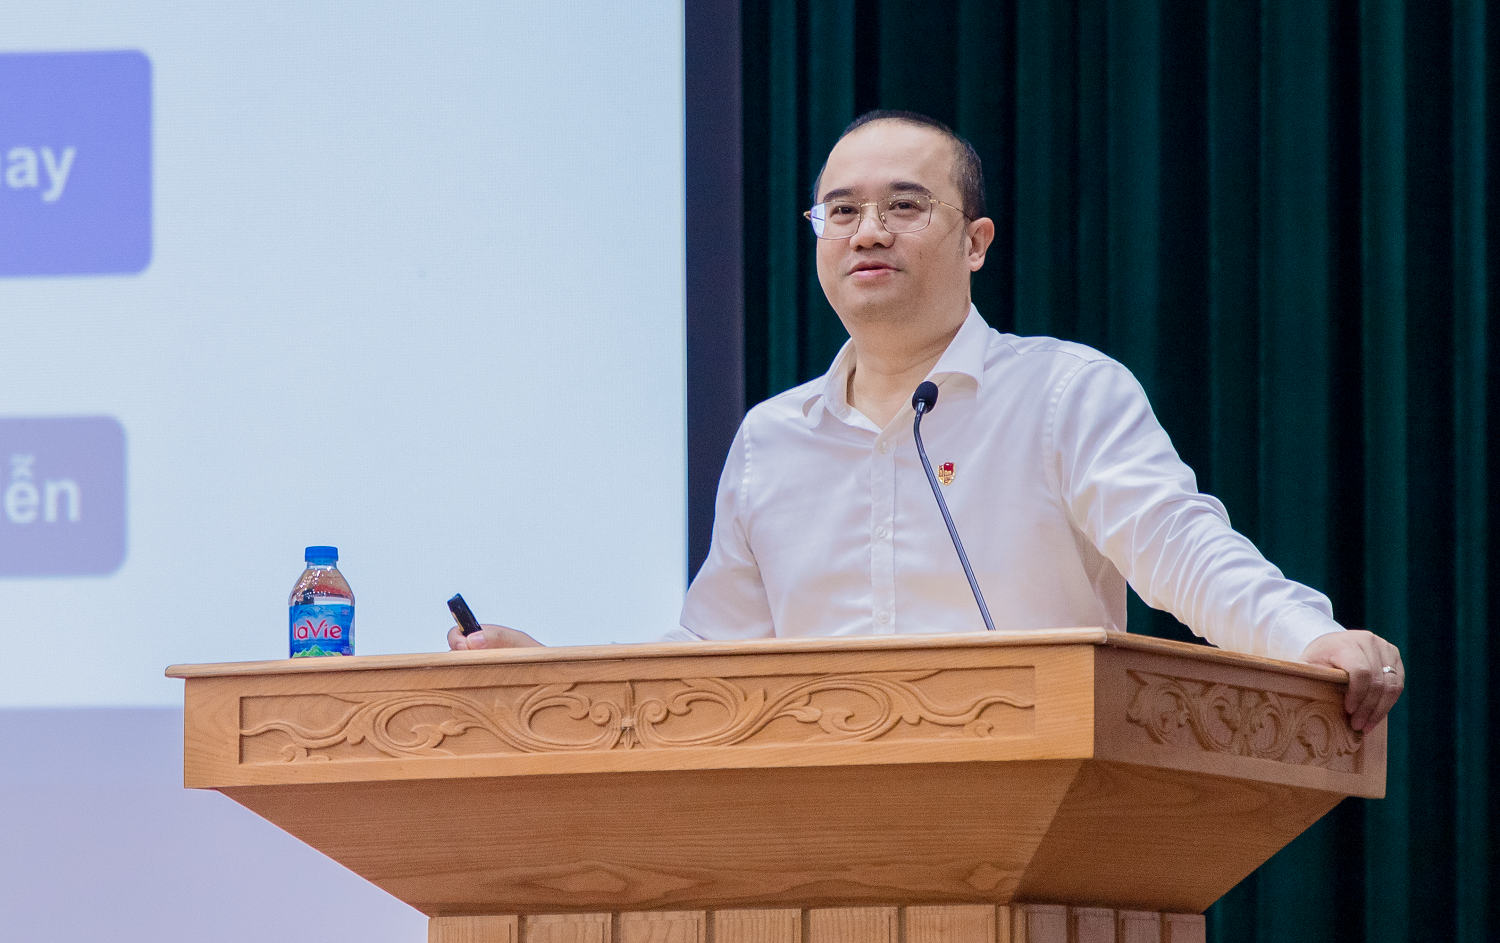 Trường Đại học Kinh tế - ĐHQGHN đồng hành cùng huyện Thạch Thất, Hà Nội đào tạo, bồi dưỡng kiến thức mới cho cán bộ quản lý 